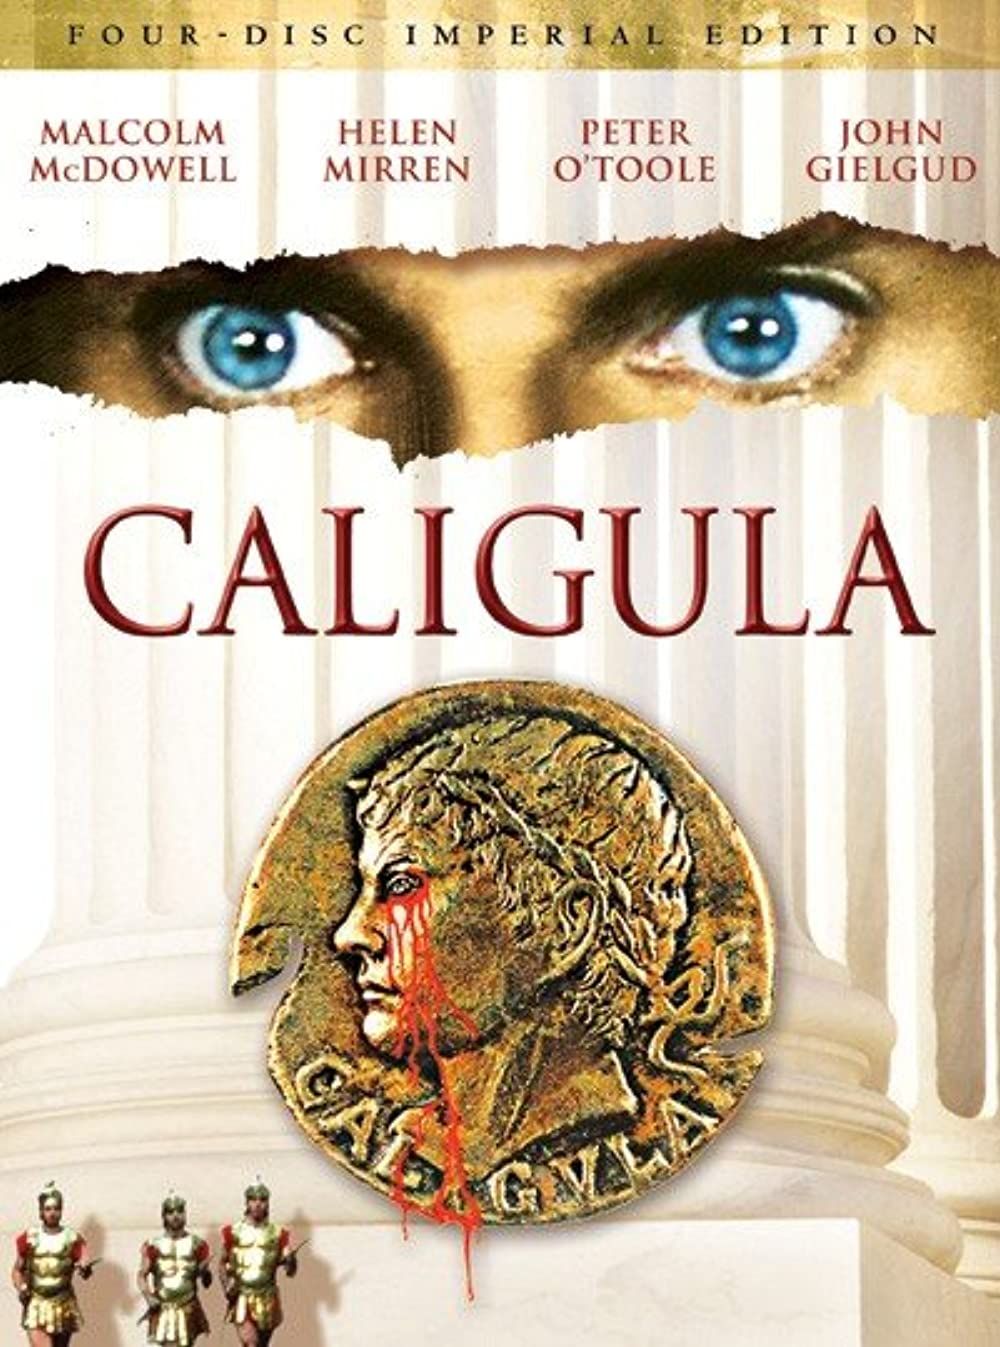 [18+] Caligula (1979) English BluRay download full movie